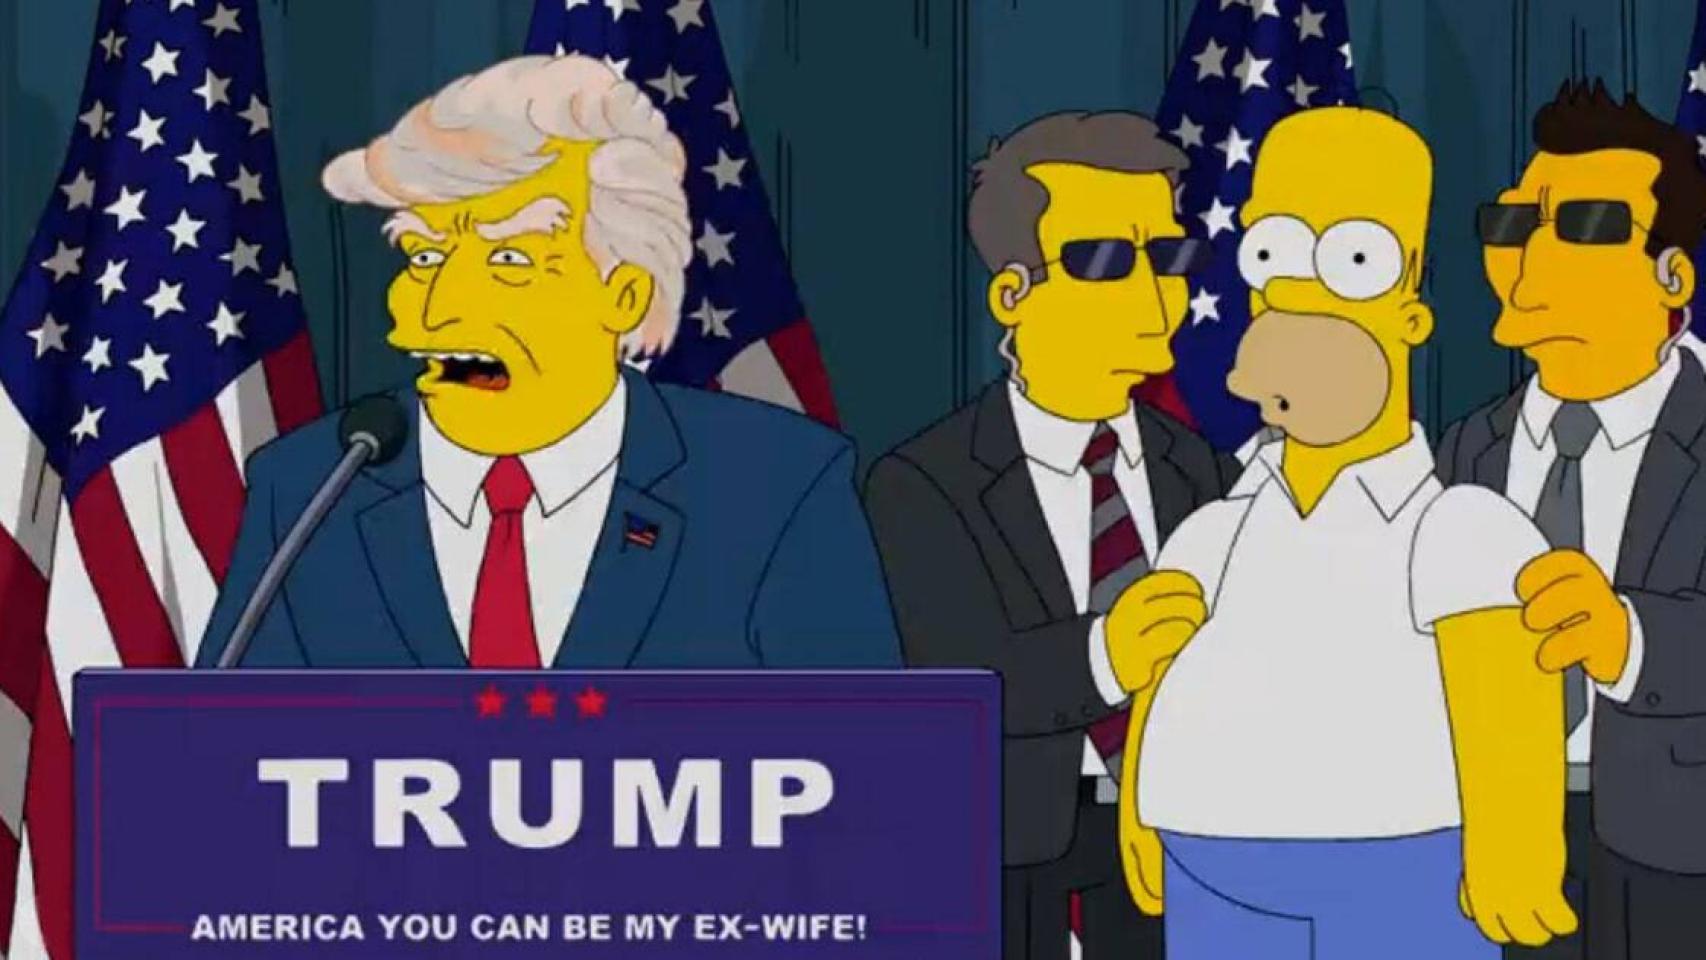 Otra profecía de Los Simpson se cumple: Donald Trump, presidente de EEUU